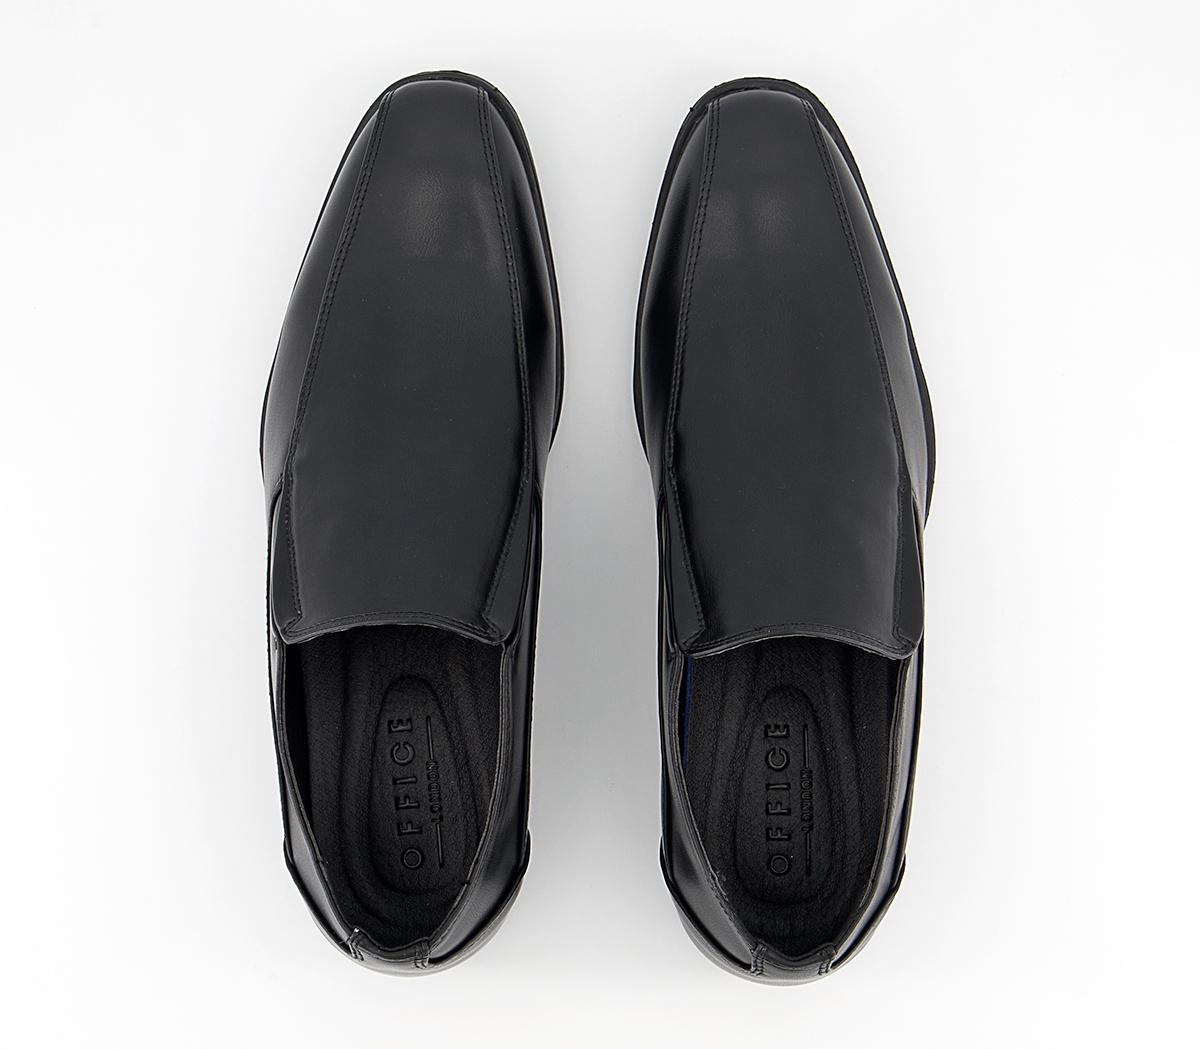 OFFICE Marv Tramline Slip On Shoes Black - Men’s Smart Shoes